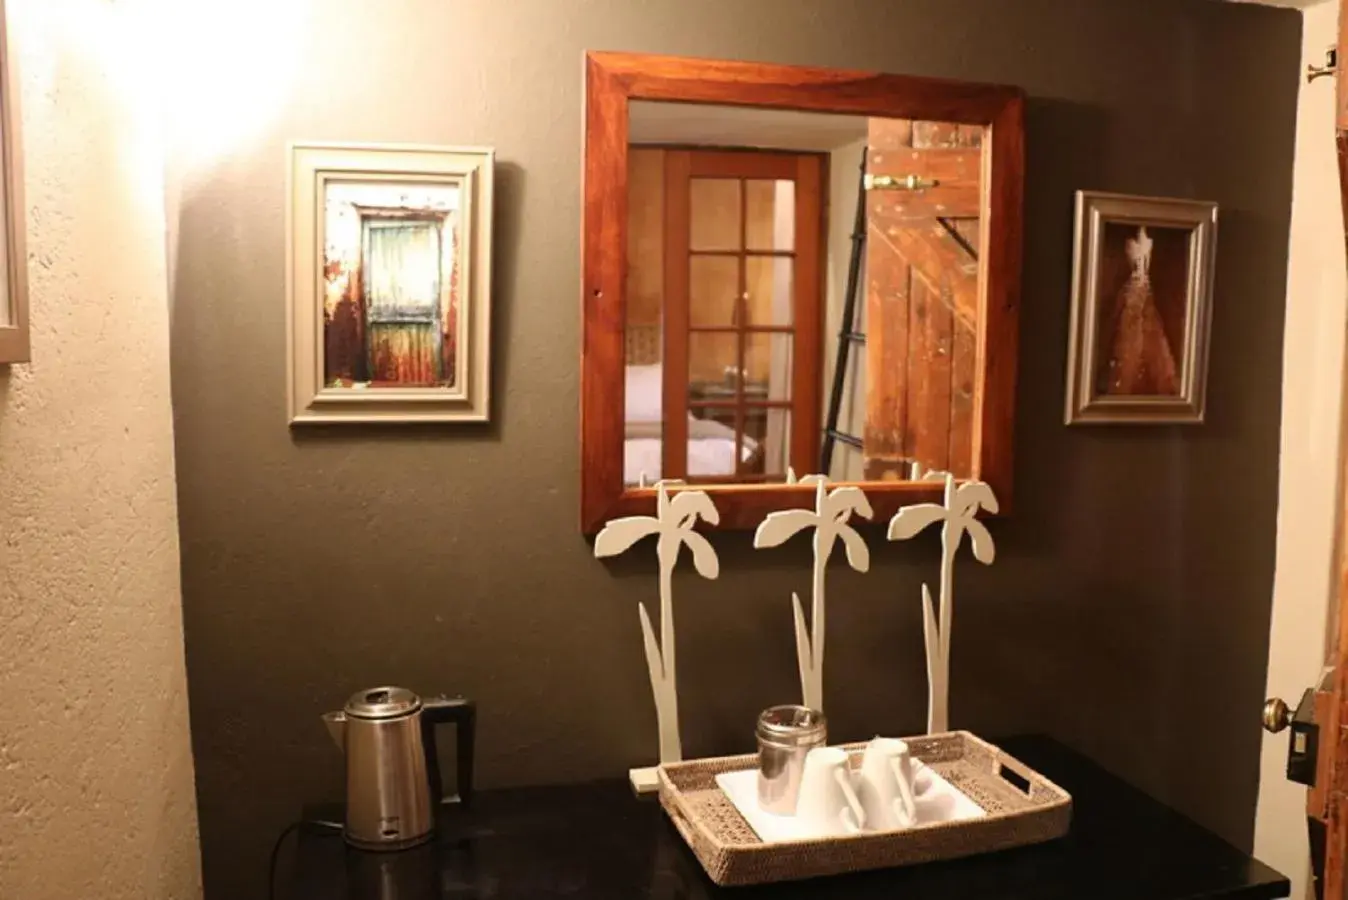 Coffee/tea facilities, Bathroom in Sherewood Lodge